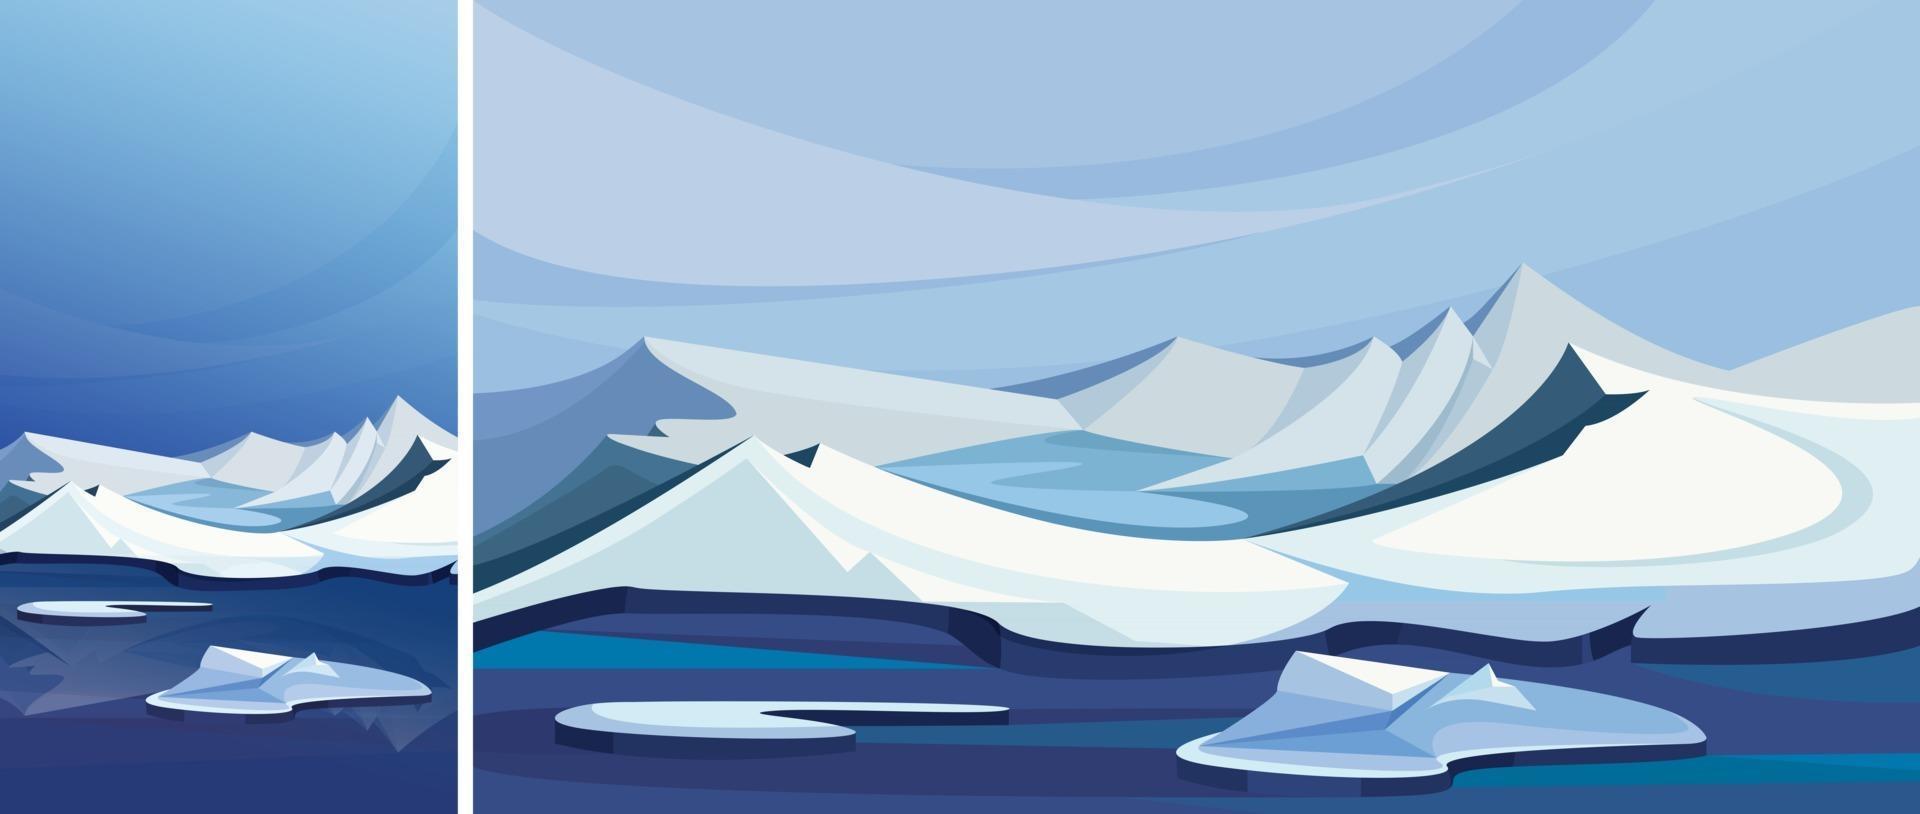 paysage arctique avec des montagnes de glace. paysage naturel en orientation verticale et horizontale. vecteur